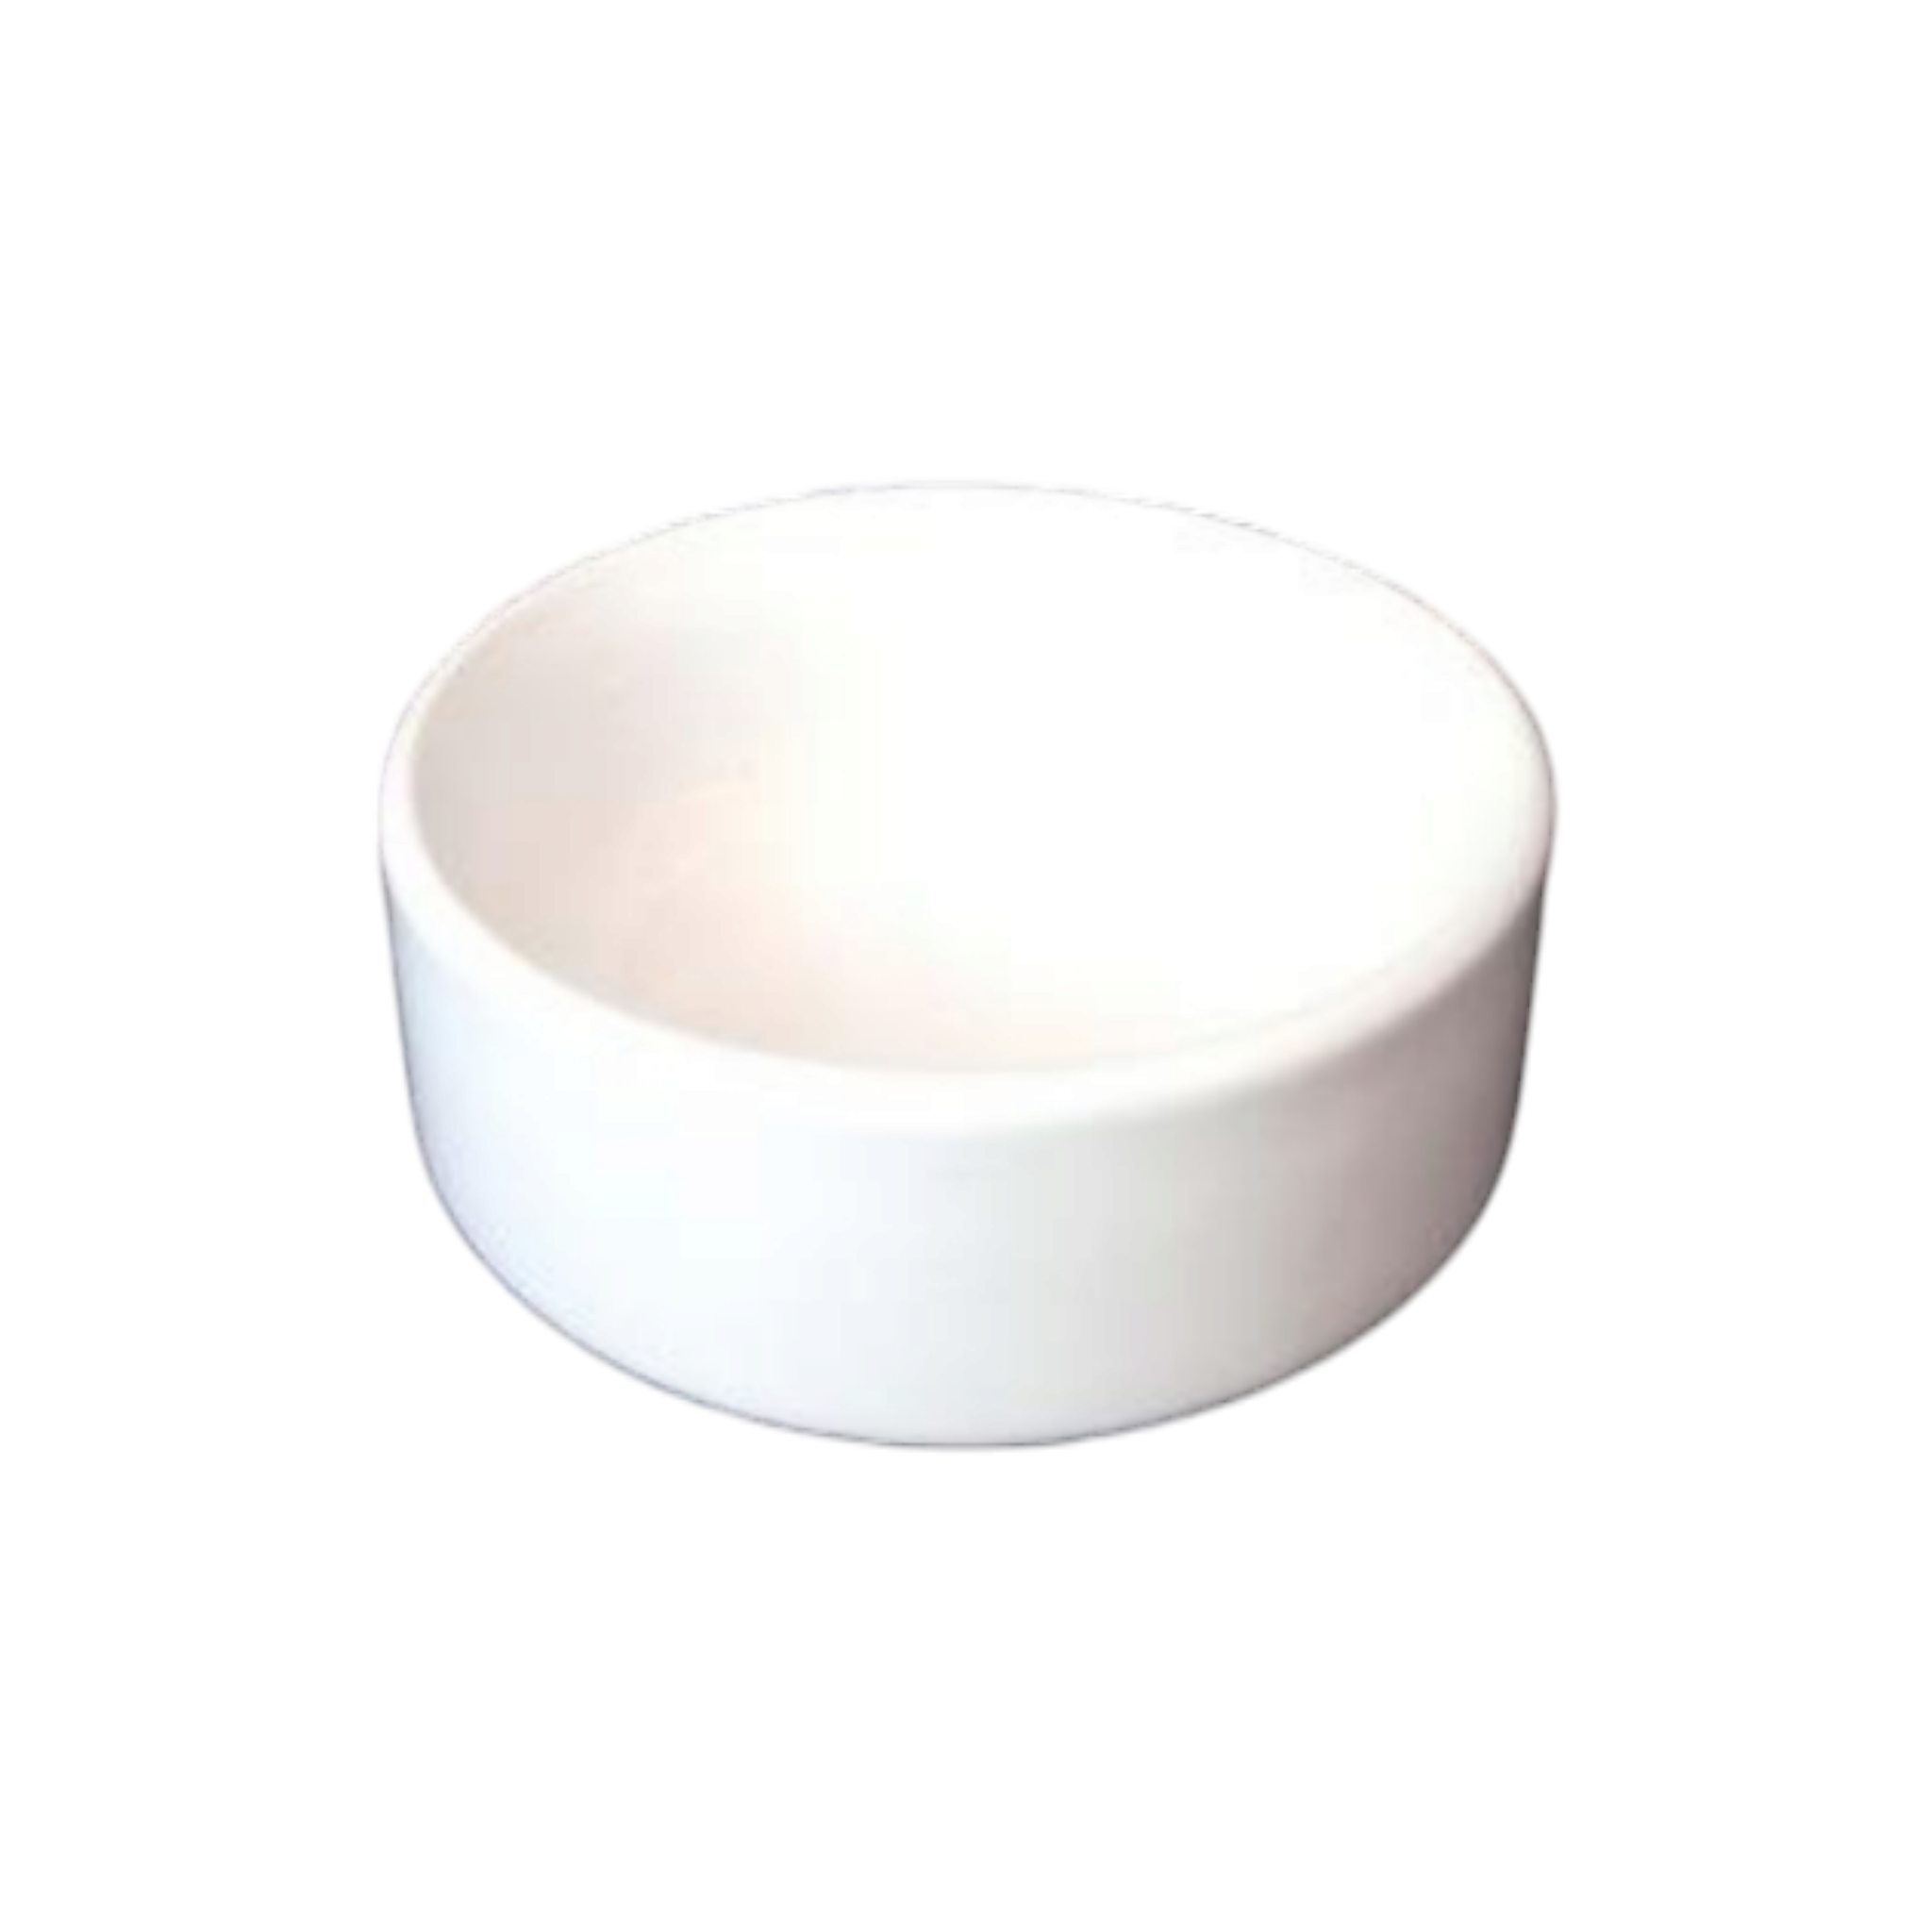 Ceramic White Cereal Bowl 4.5inch